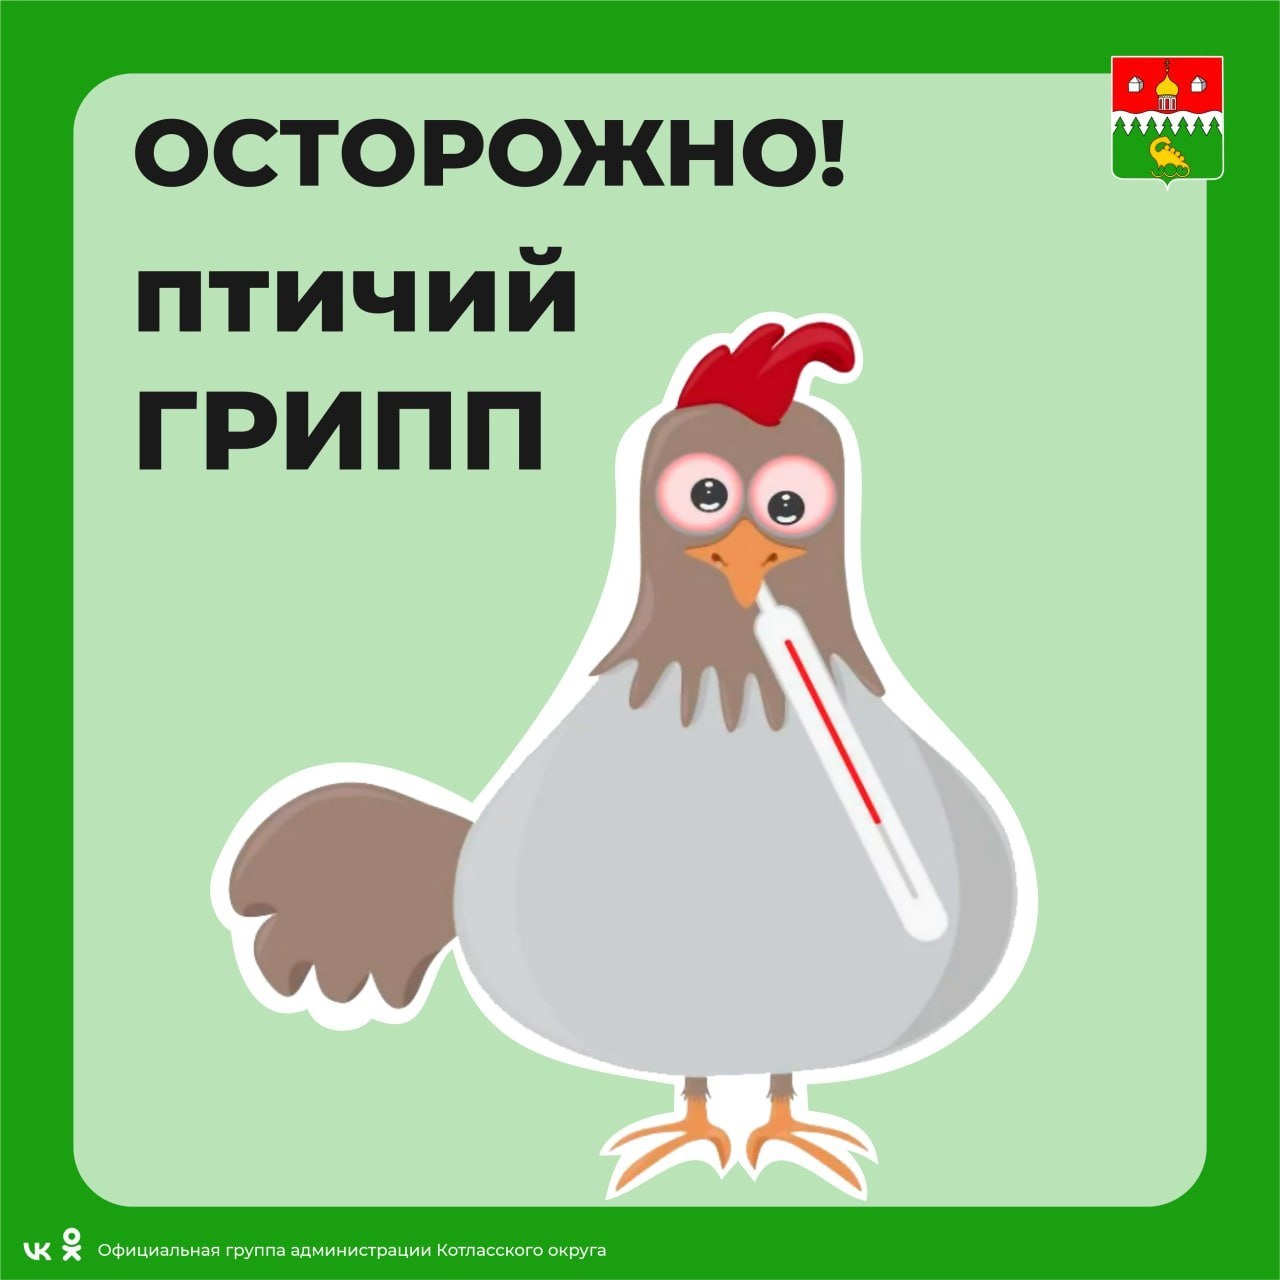 Птичий грипп захватывает российские регионы.